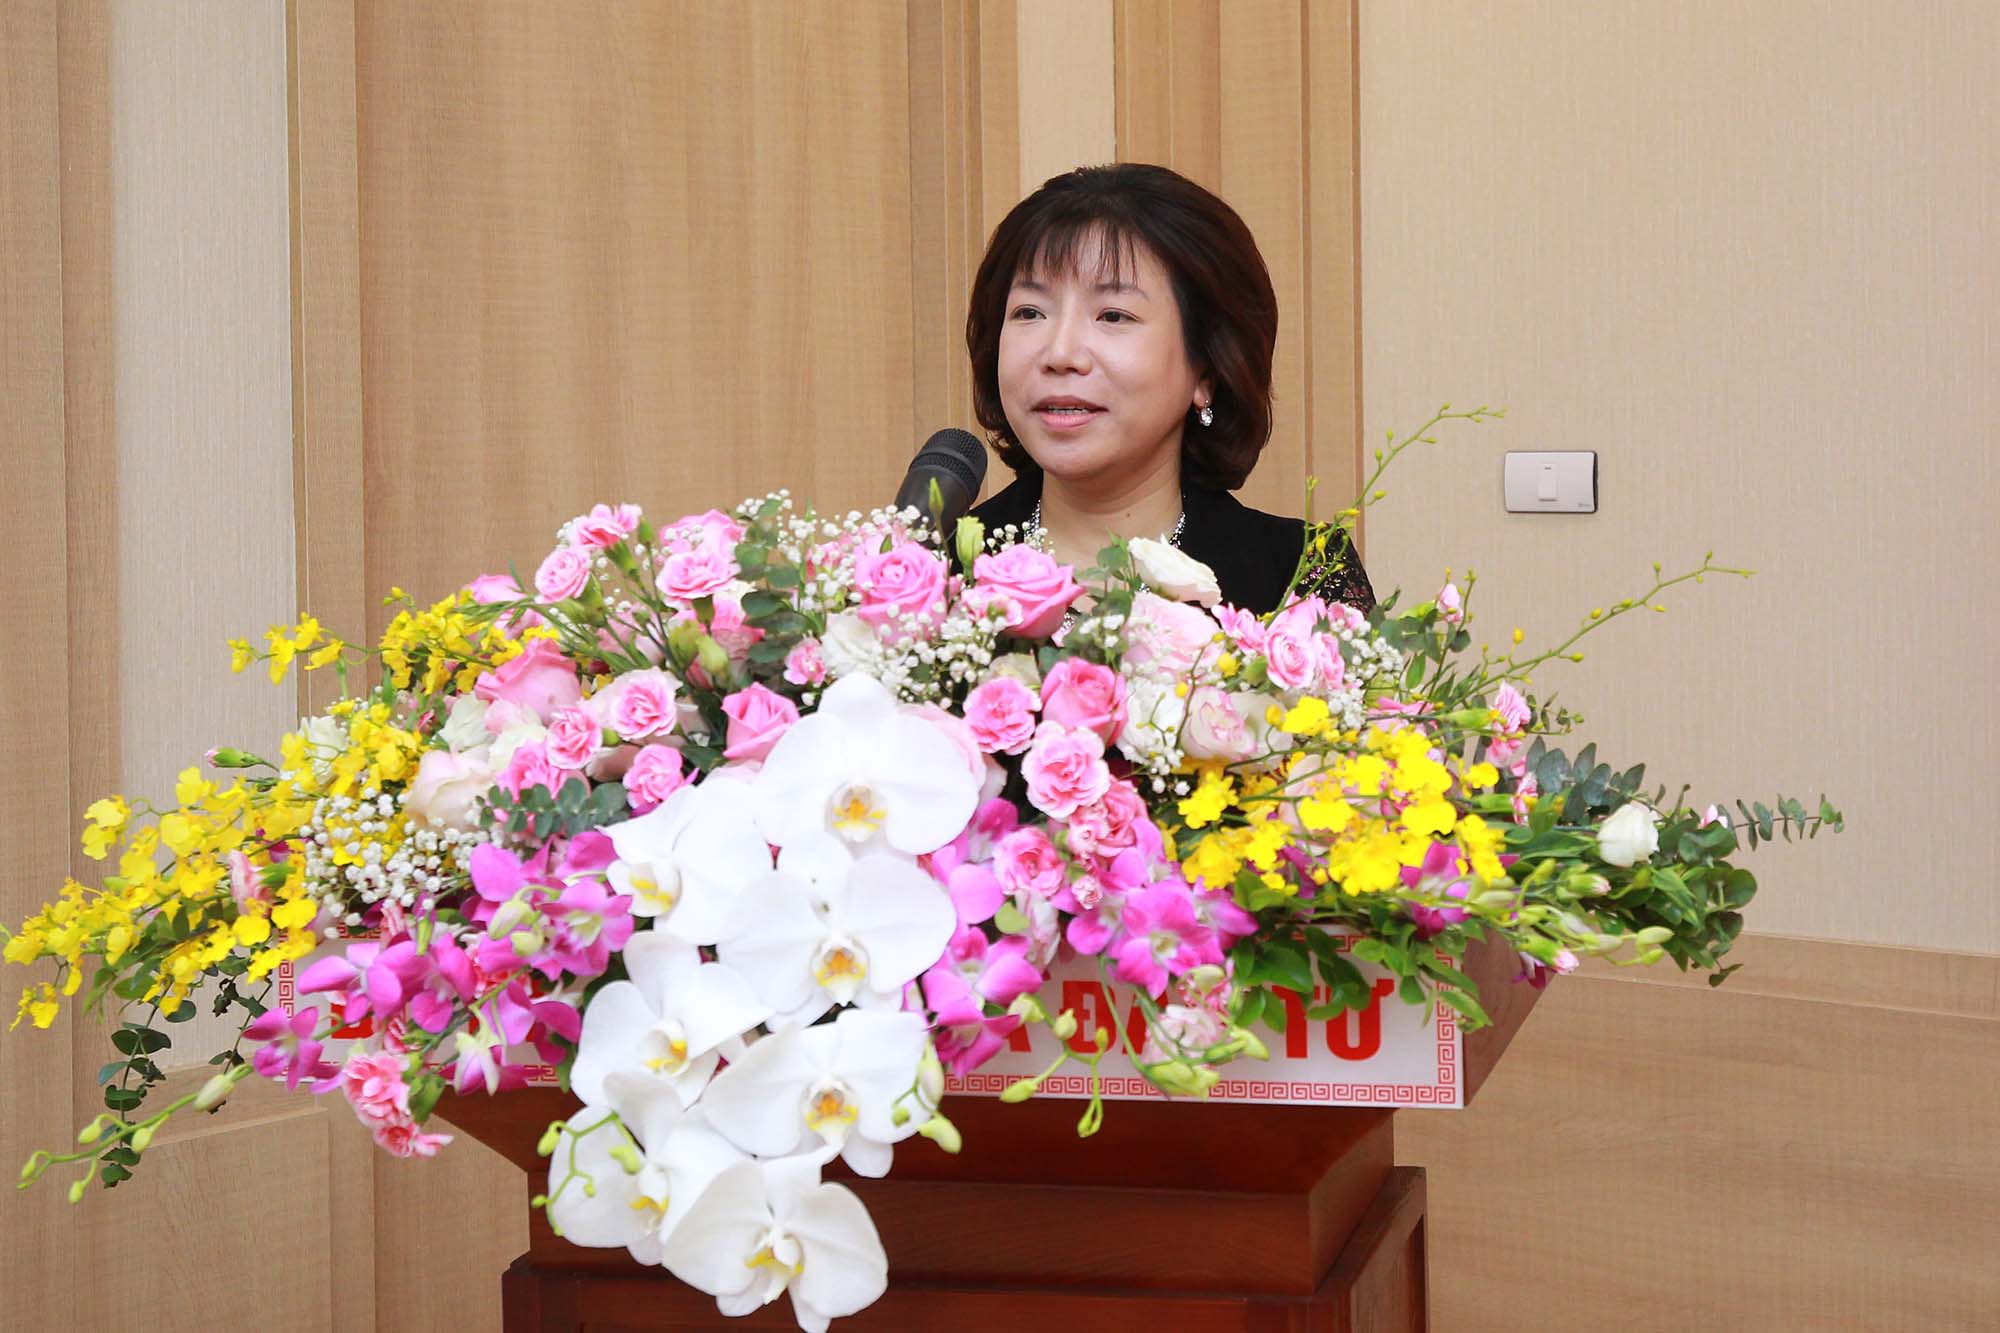 Bà Nguyễn Thị Thanh Nhàn, Chủ tịch HĐQT kiêm Tổng giám đốc CTCP Tiến bộ Quốc tế (AIC) - đơn vị hỗ trợ, tư vấn giới thiệu về hệ thống